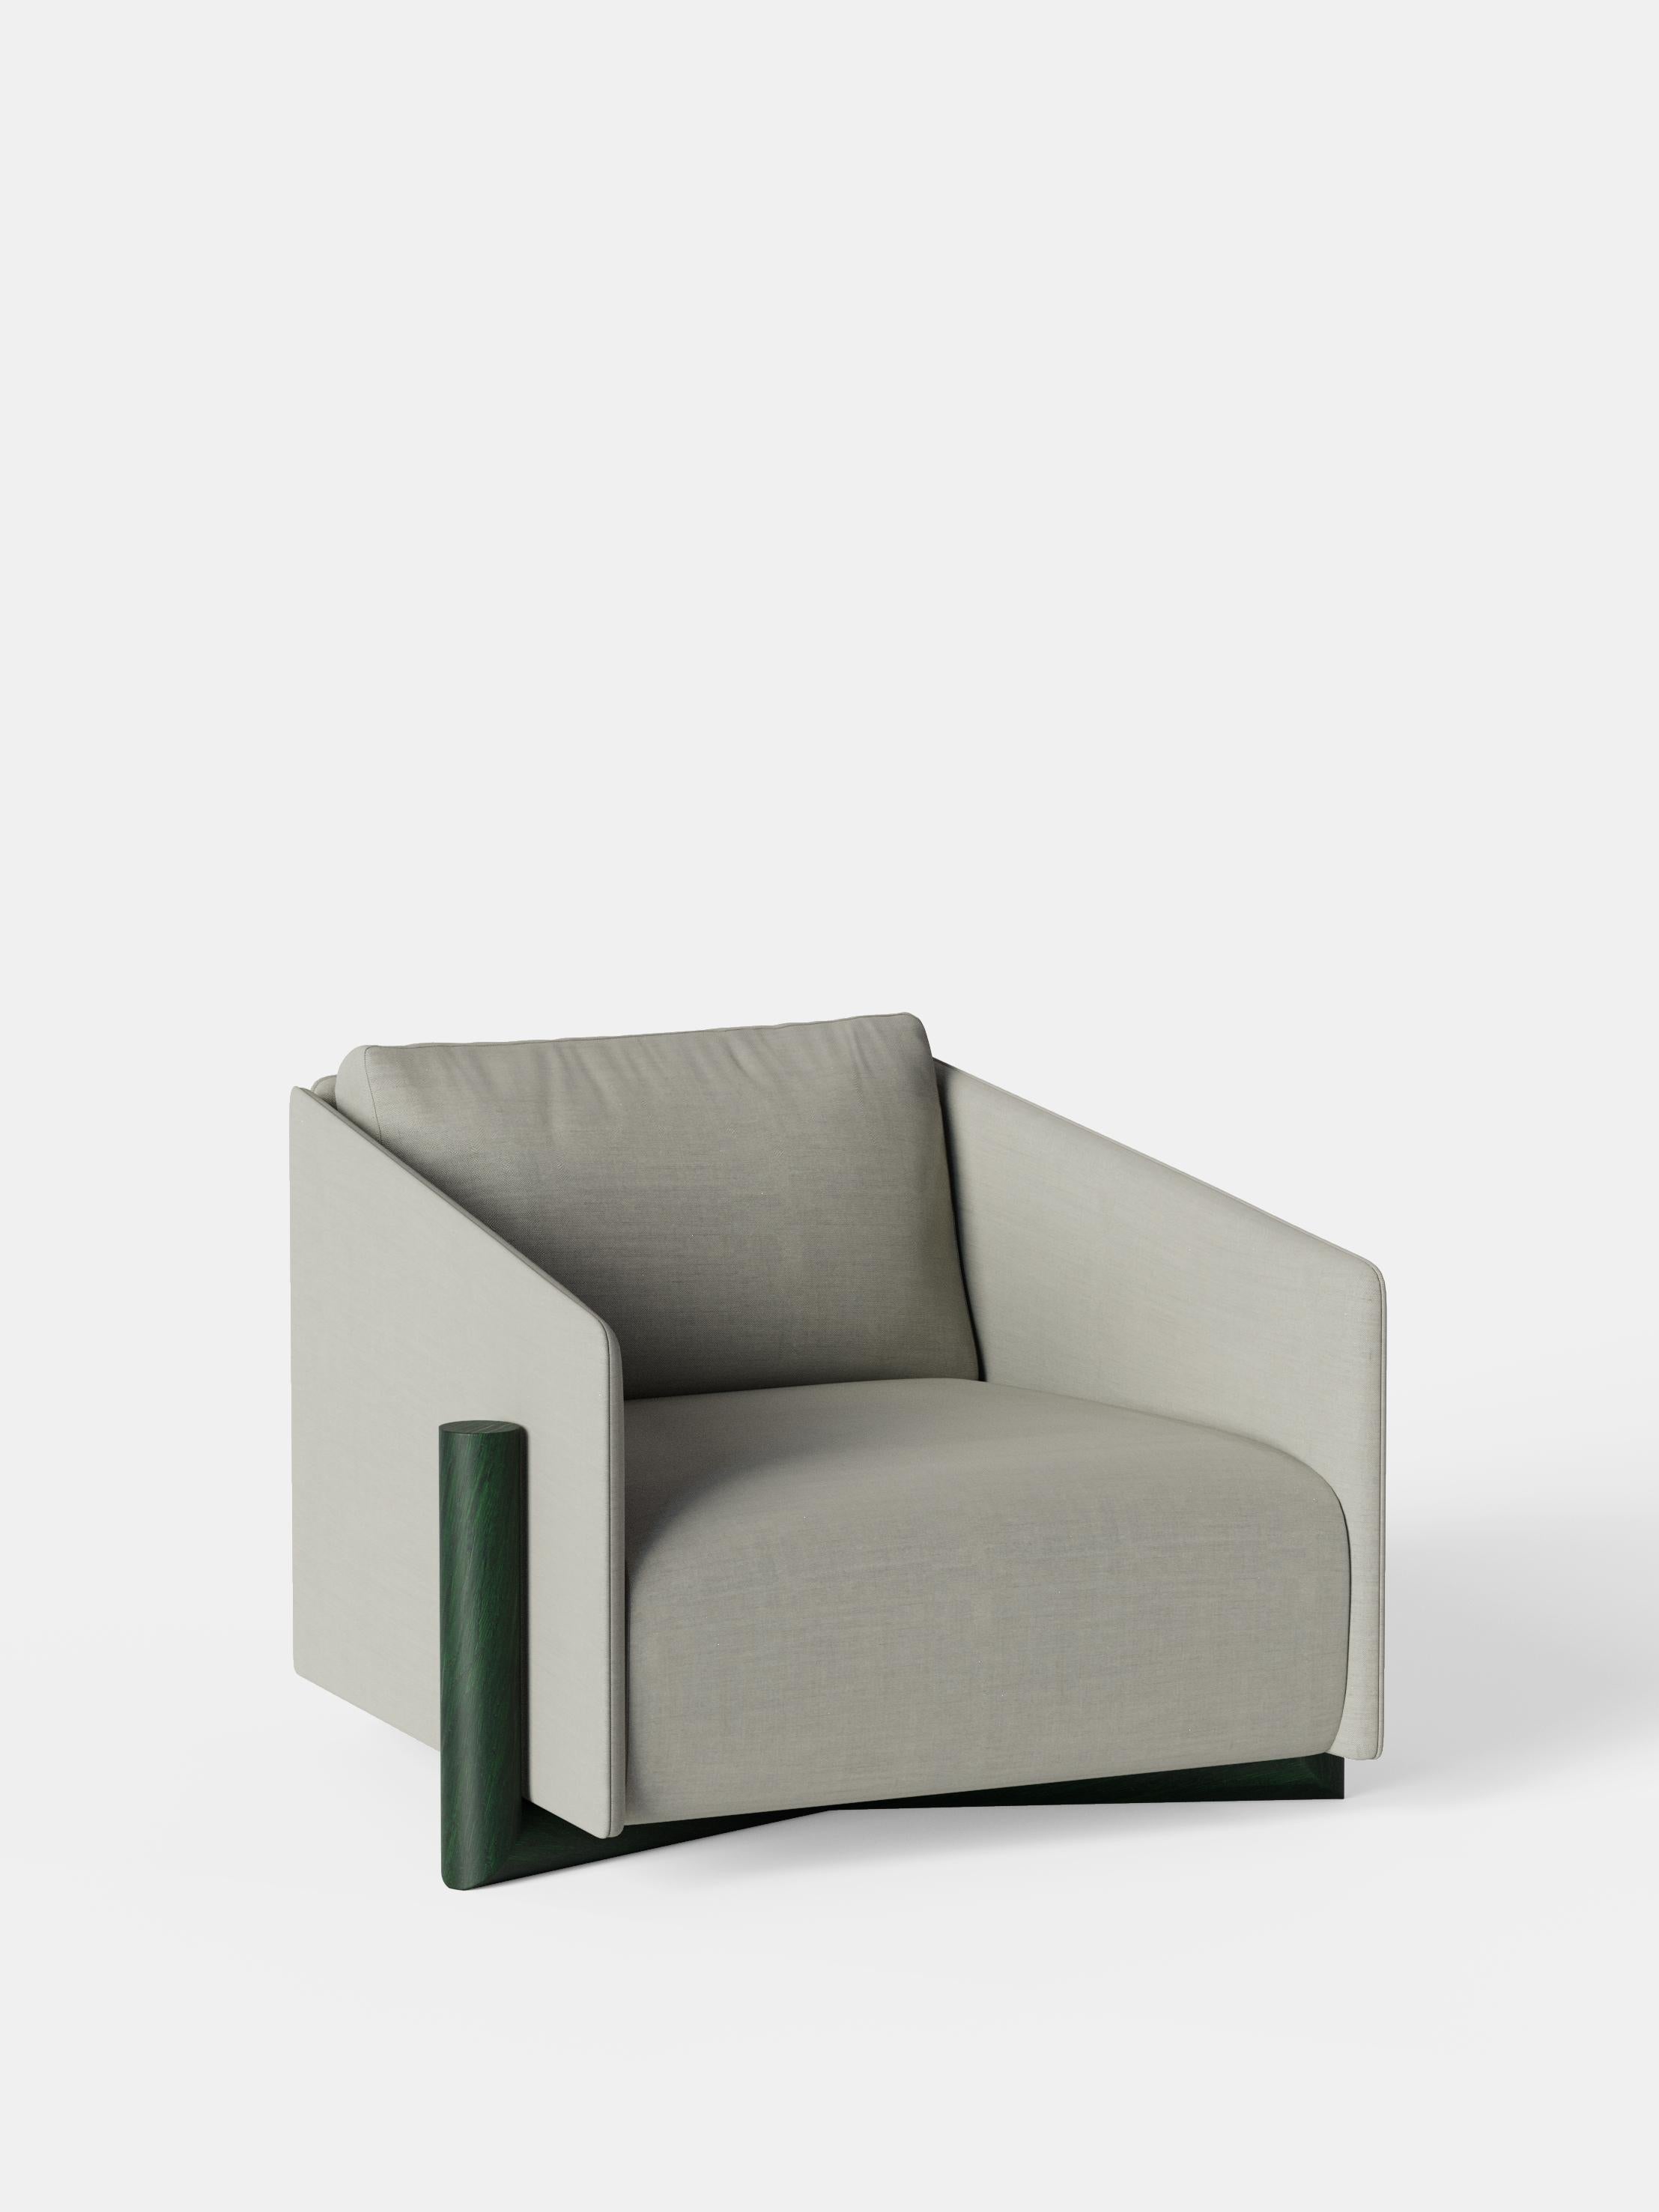 Ensemble de 2 fauteuils en bois gris par Kann Design
Dimensions : D 104,5 x L 93 x H 75 cm.
MATERIAL : Base en chêne vert massif, cadre en bois, ceintures élastiques, mousse HR, tissu d'ameublement Kvadrat Remix 126 (90% laine, 10%